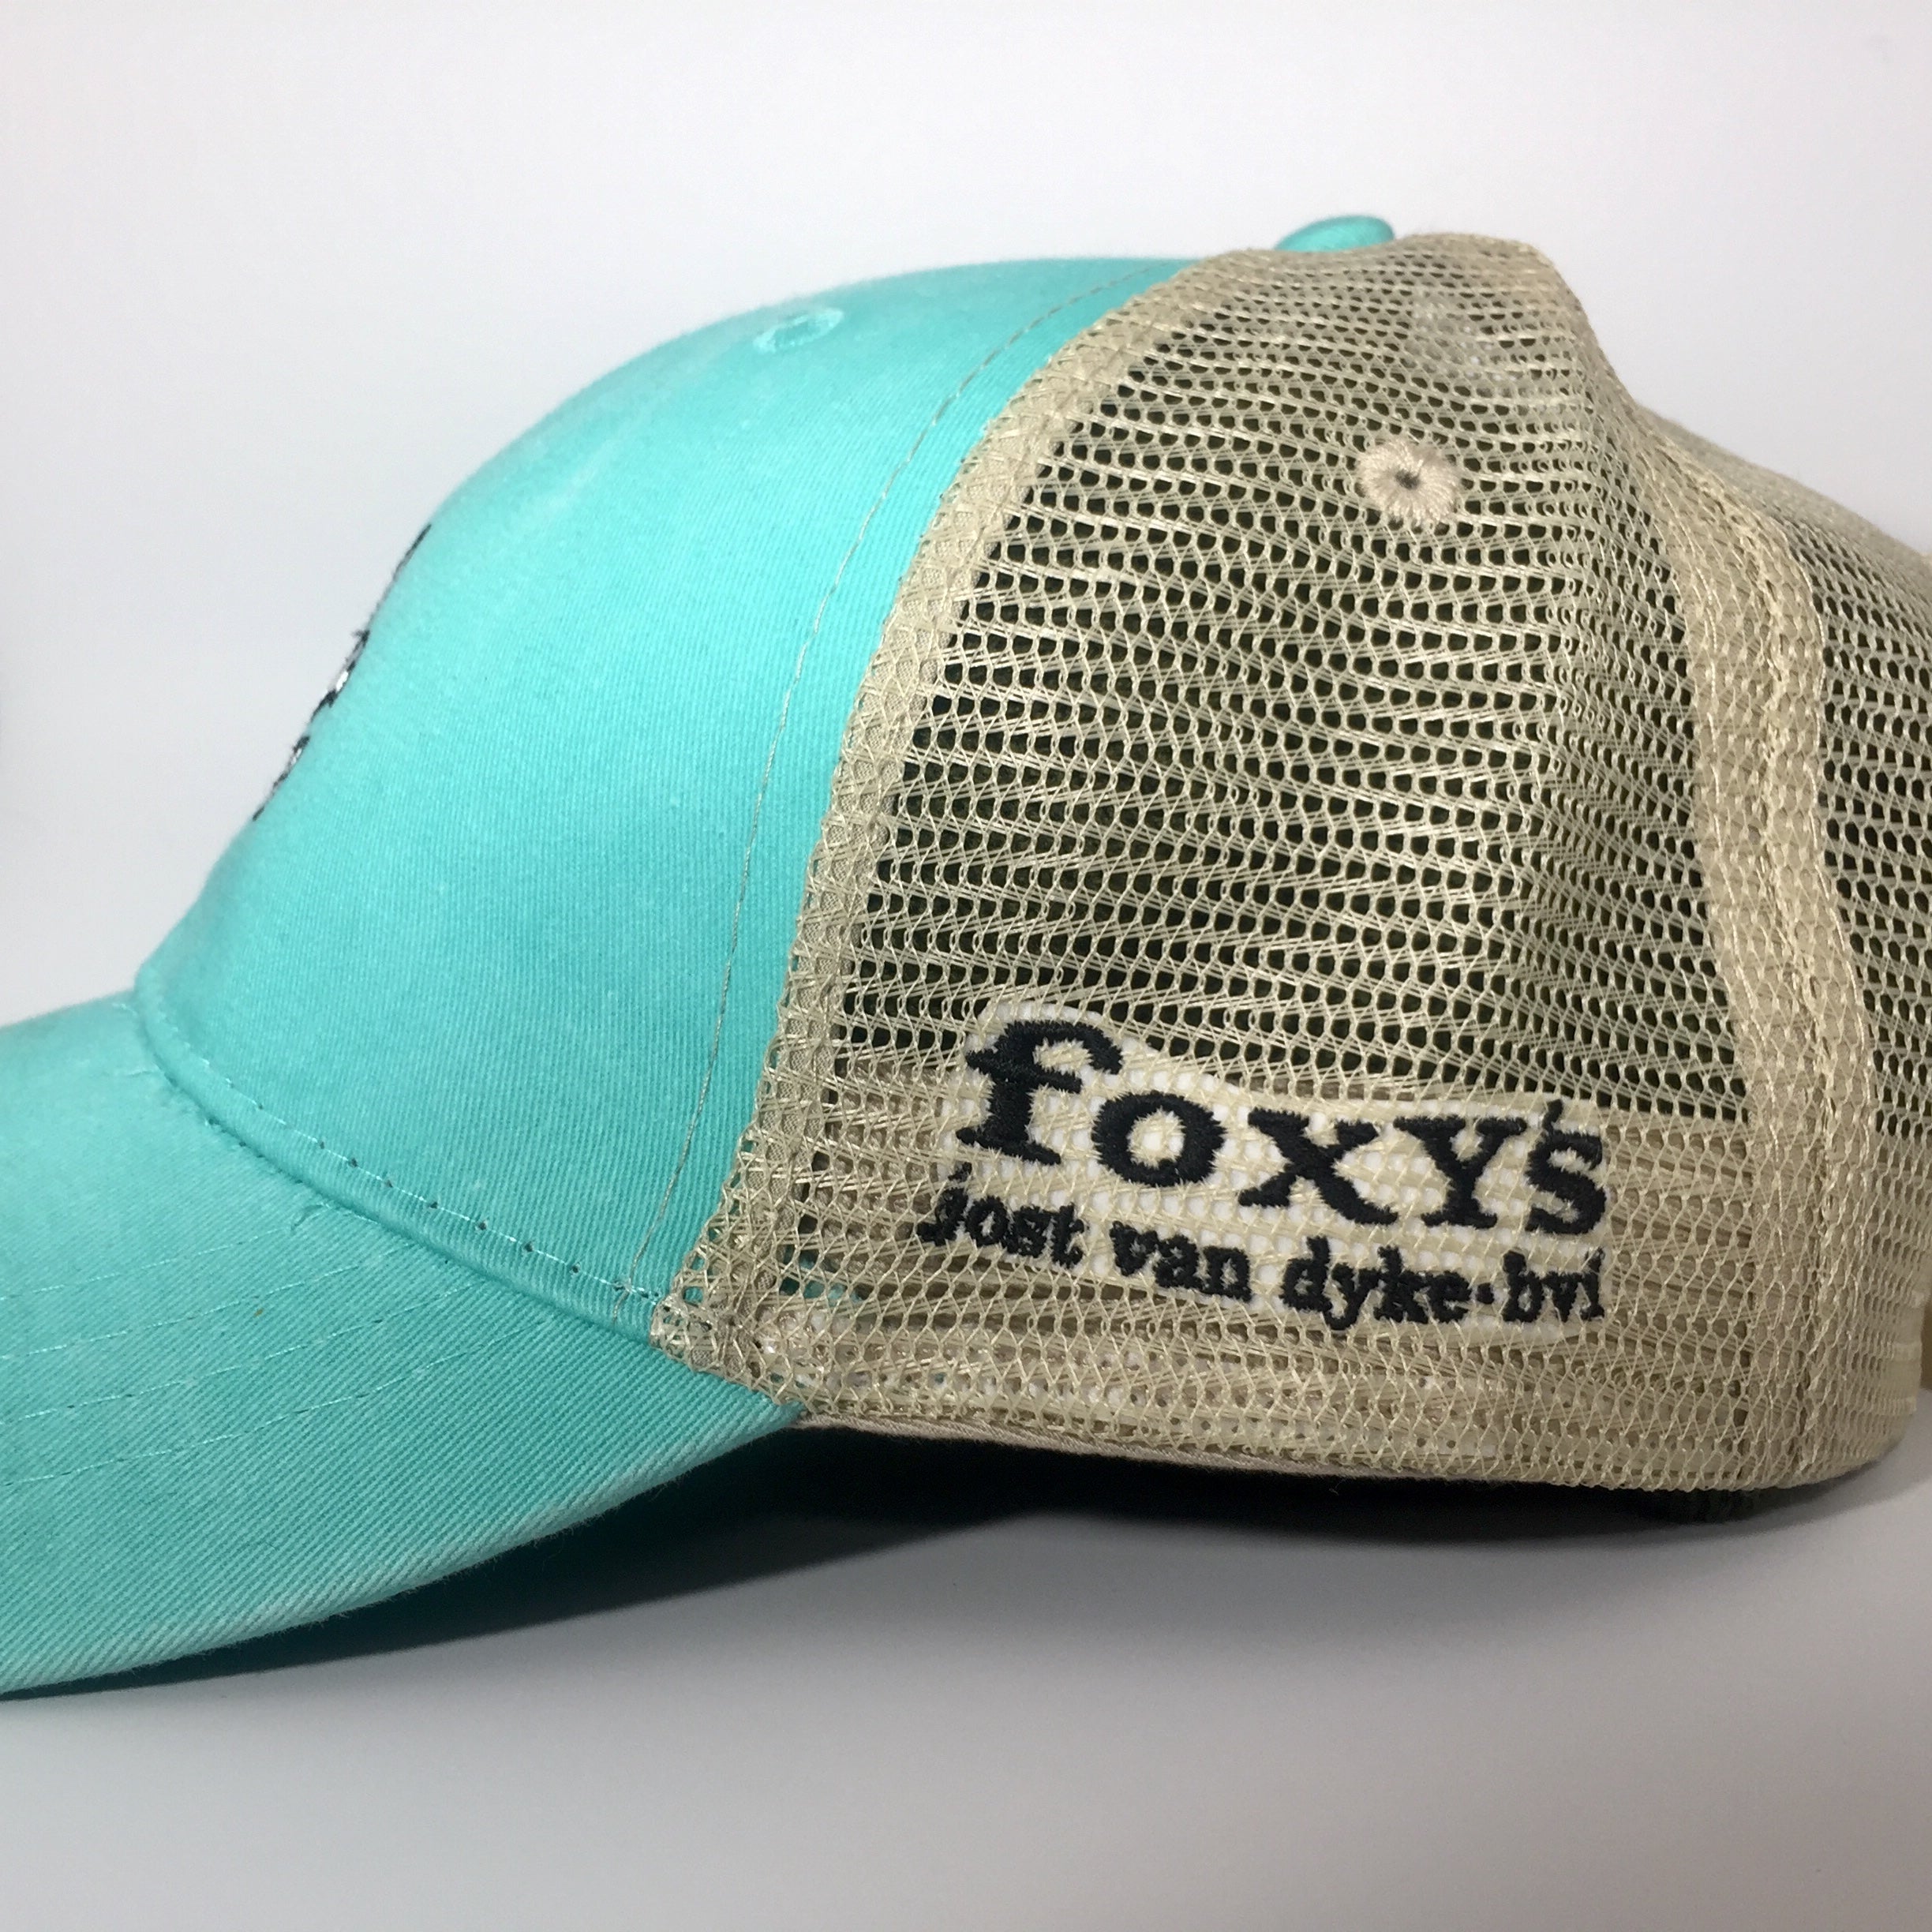 Foxy's Skull & Bones Distressed Trucker Cap – Foxy's BVI